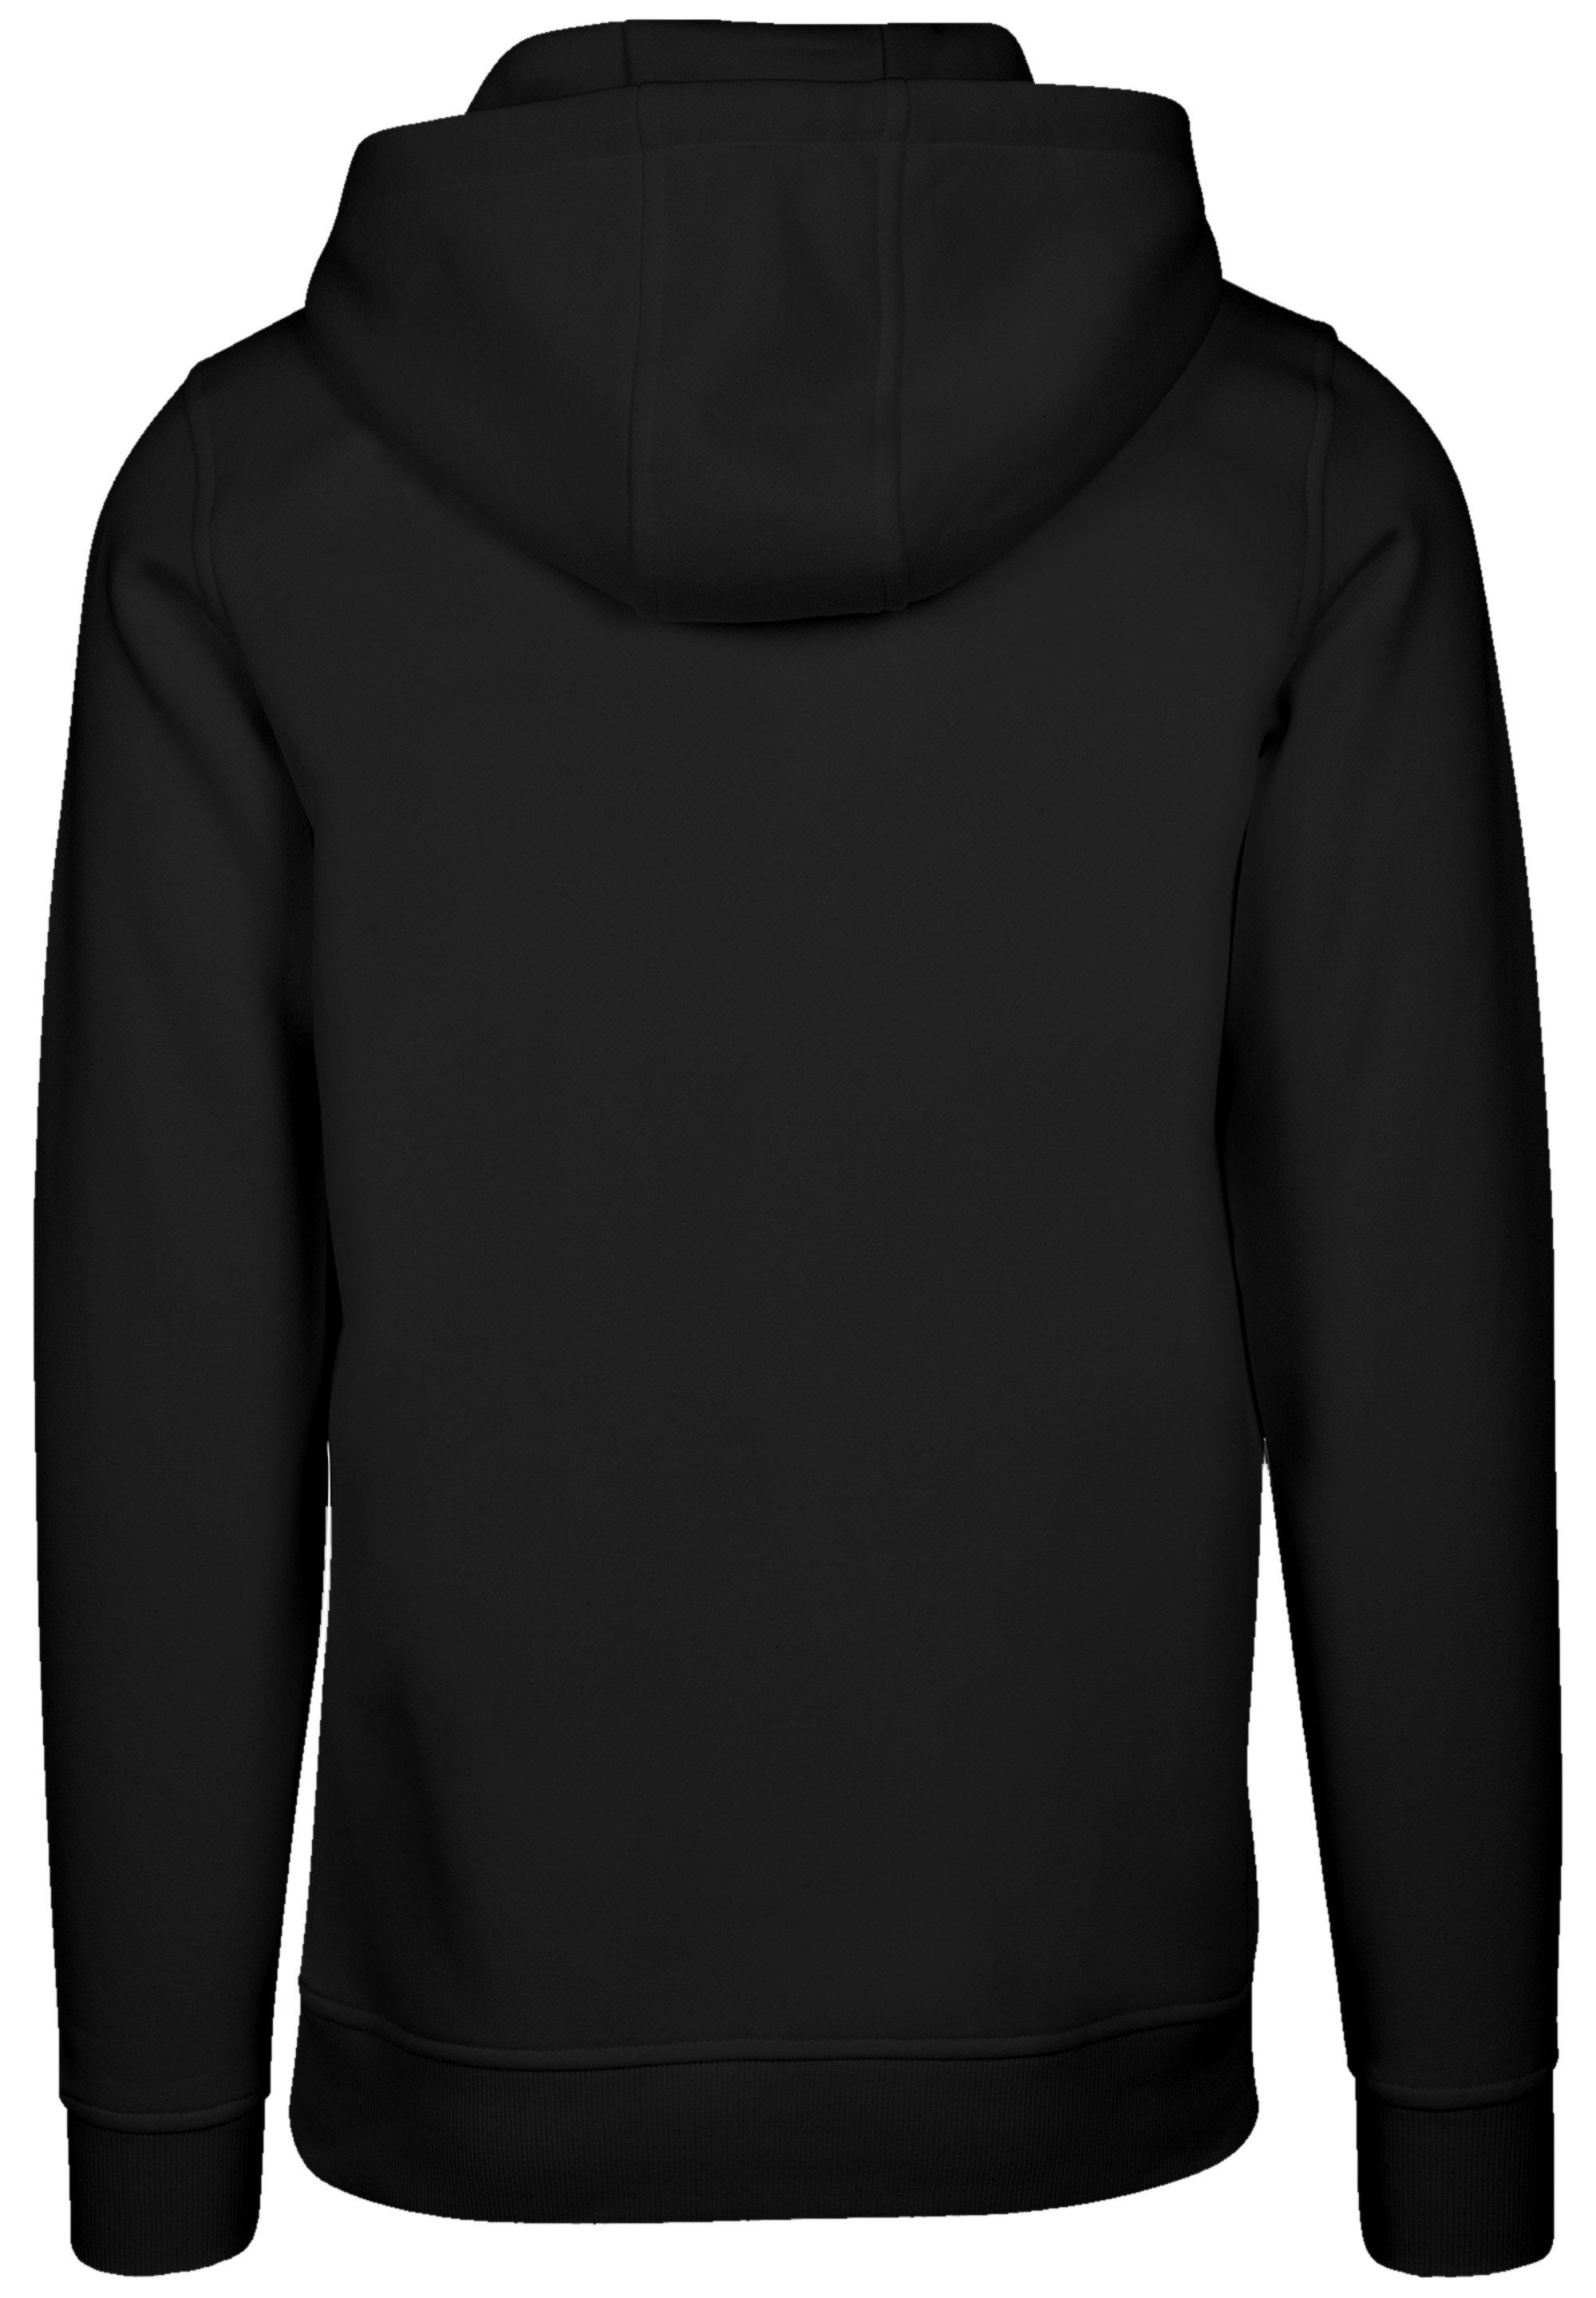 Qualität, sweater Christmas Weihnachten Weihnachten, Premium Geschenk Hoodie F4NT4STIC schwarz ugly